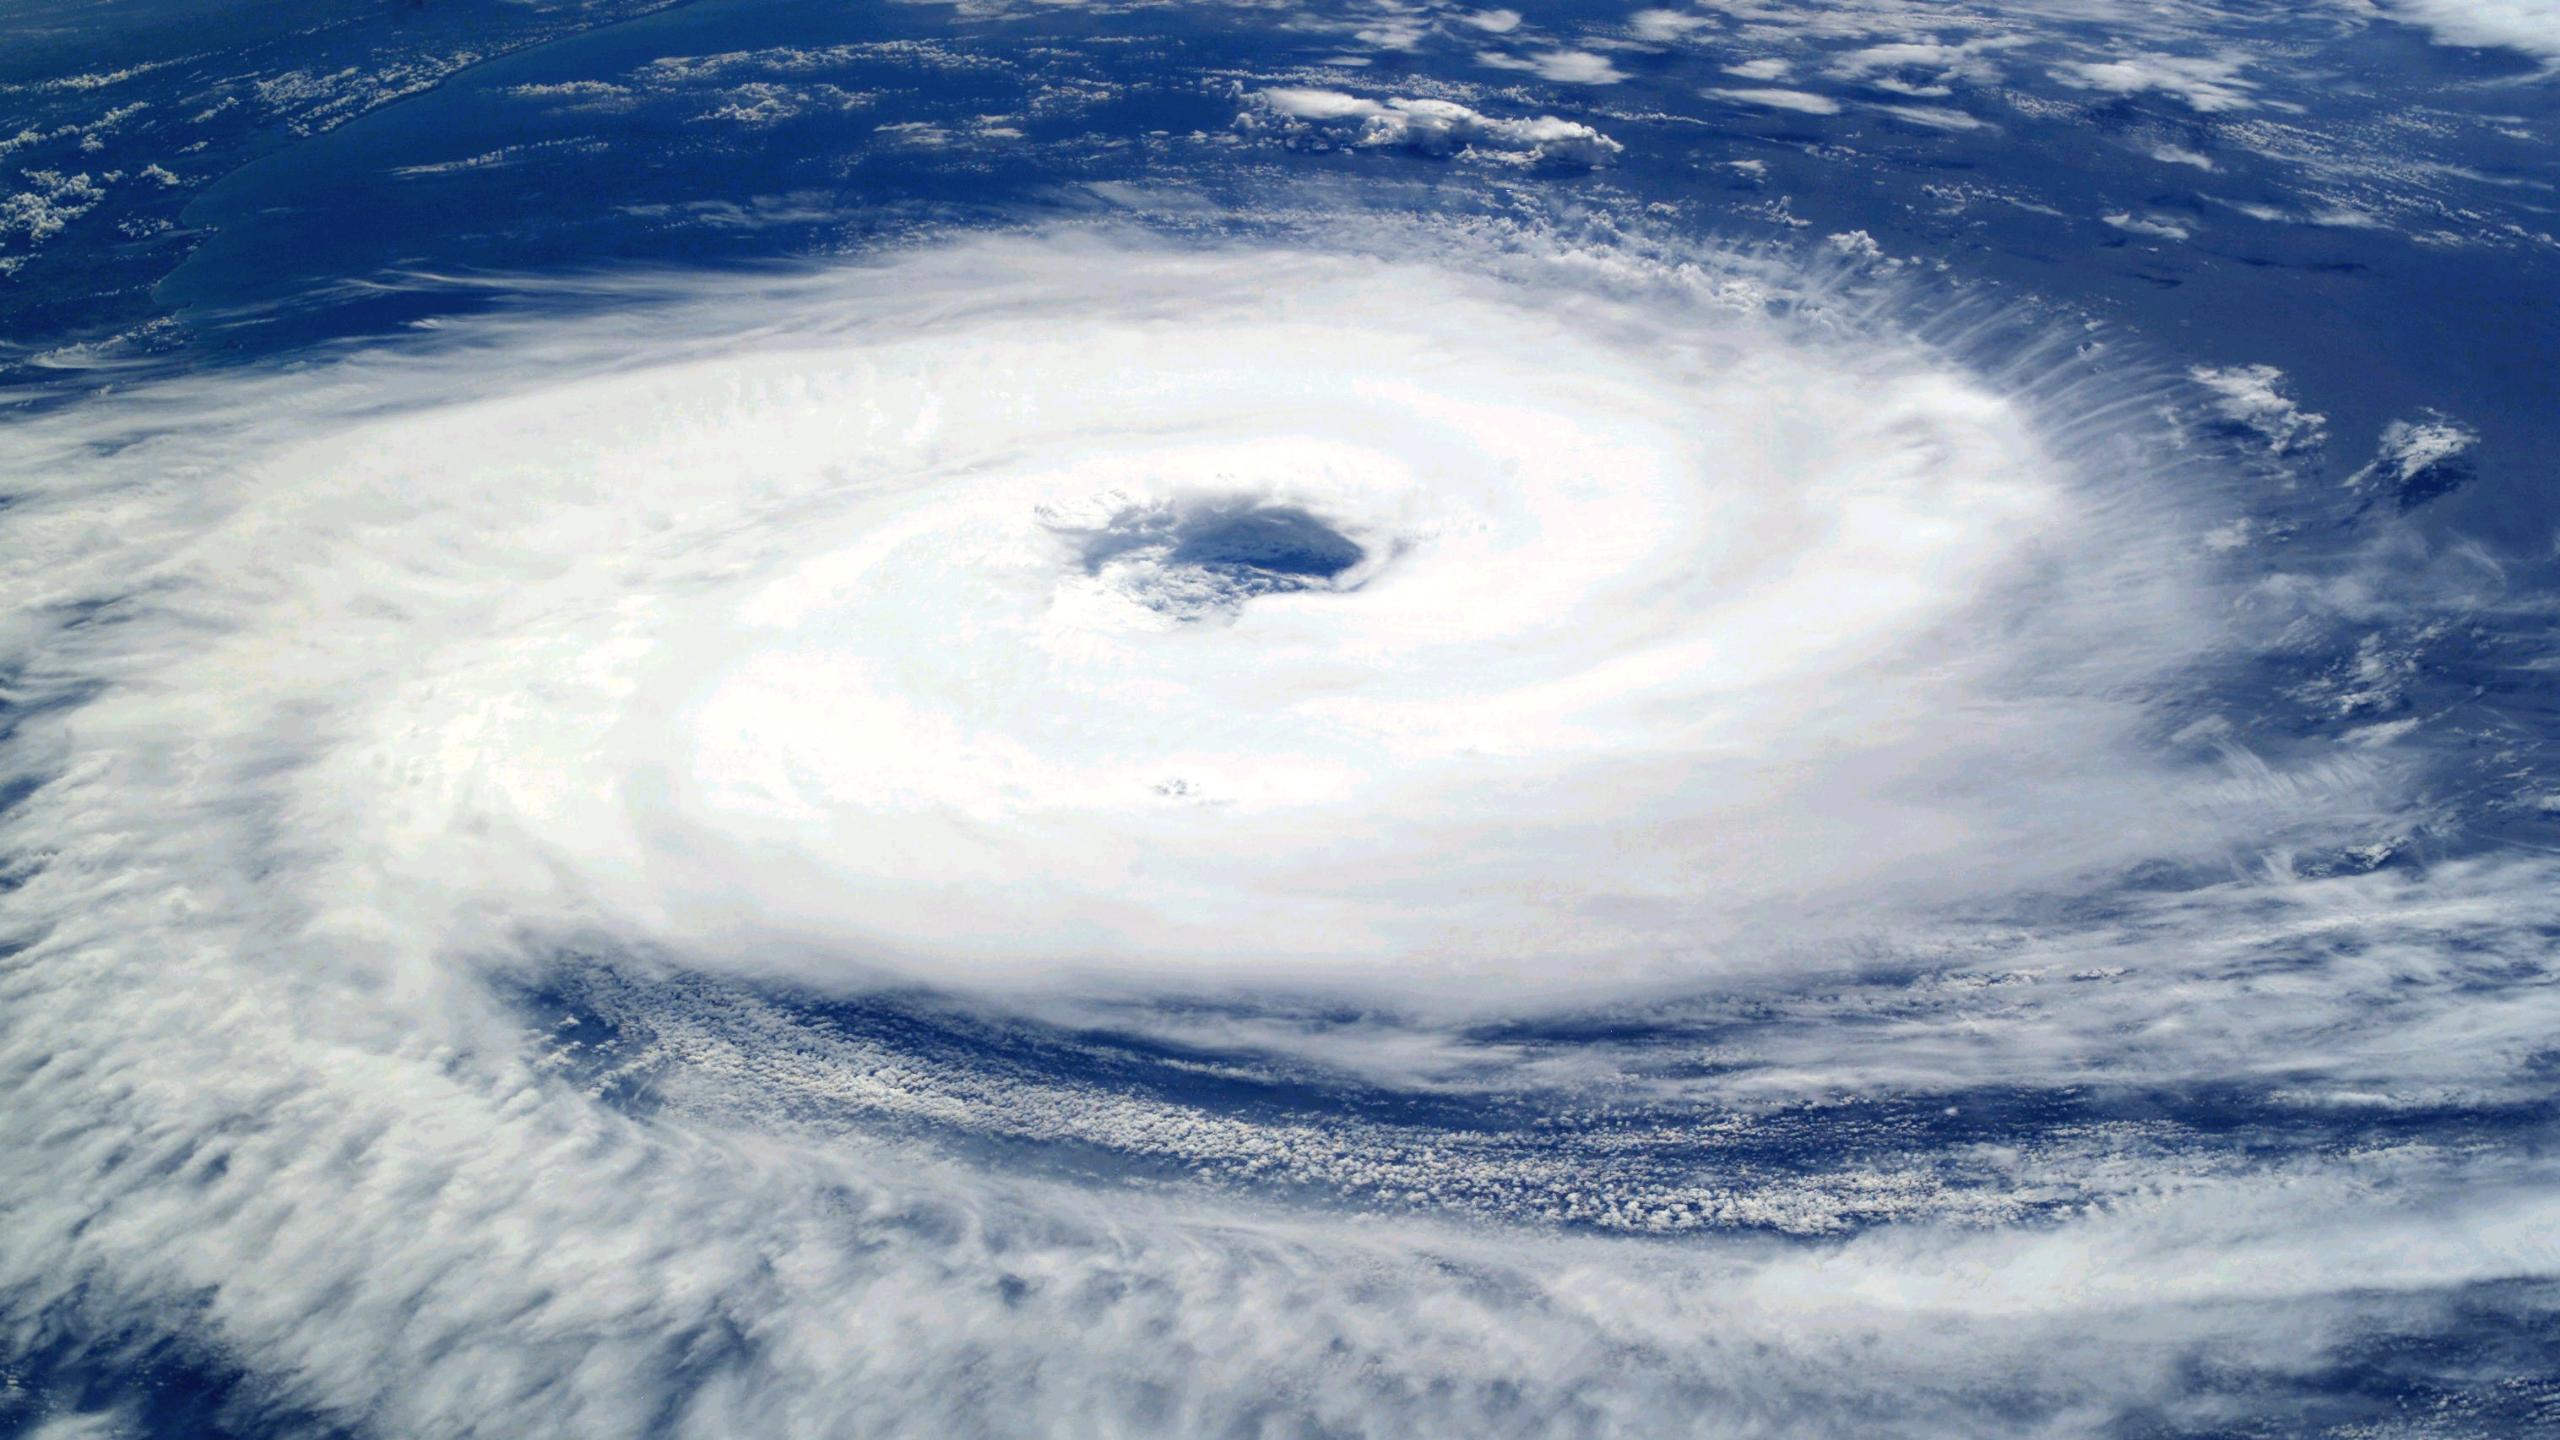 Typhoon with eye